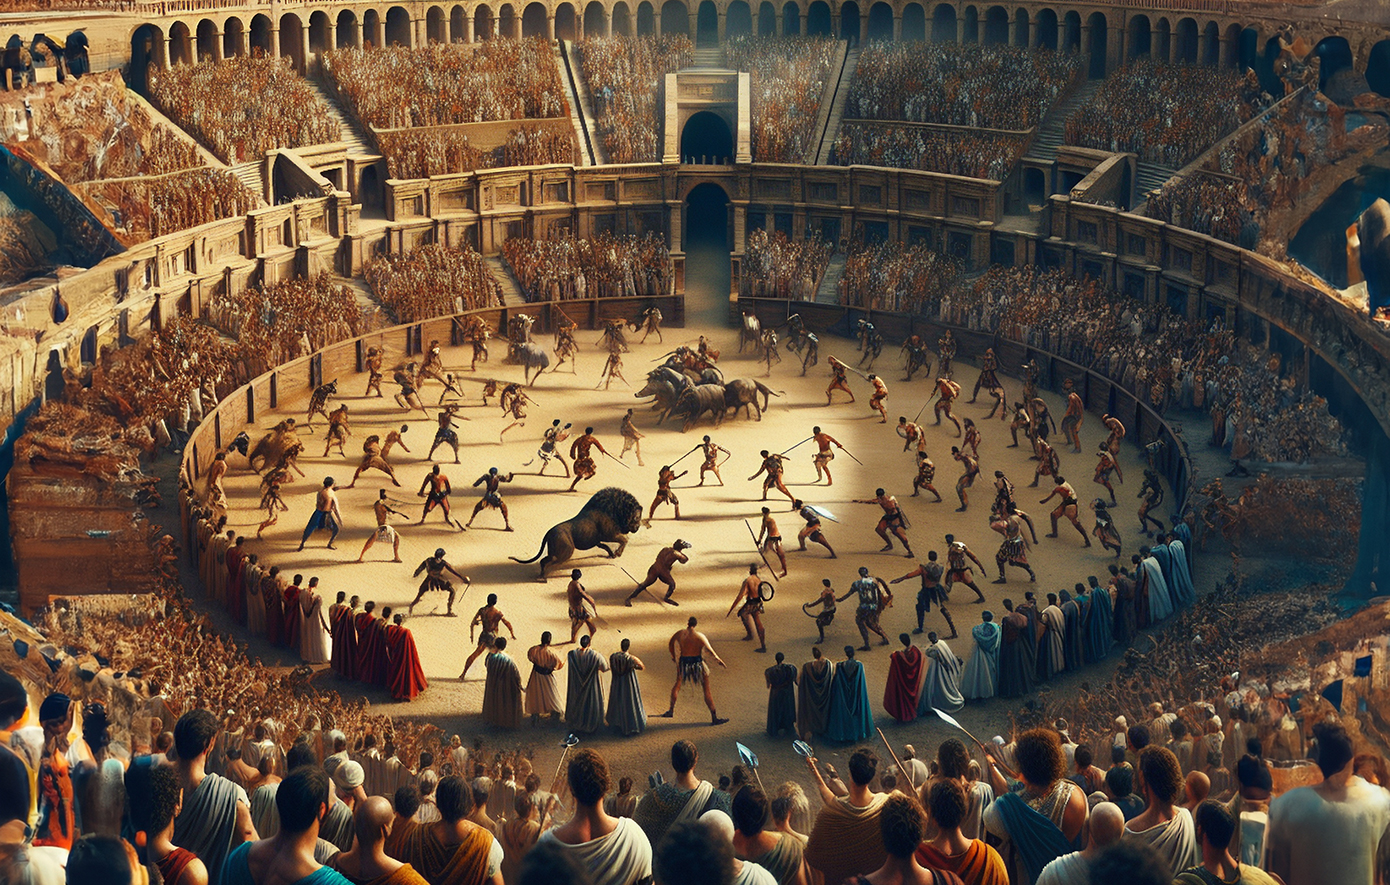 Η διαφορά των αρχαίων Ολυμπιακών Αγώνων από τις ρωμαϊκές μονομαχίες στο Κολοσσαίο της Ρώμης